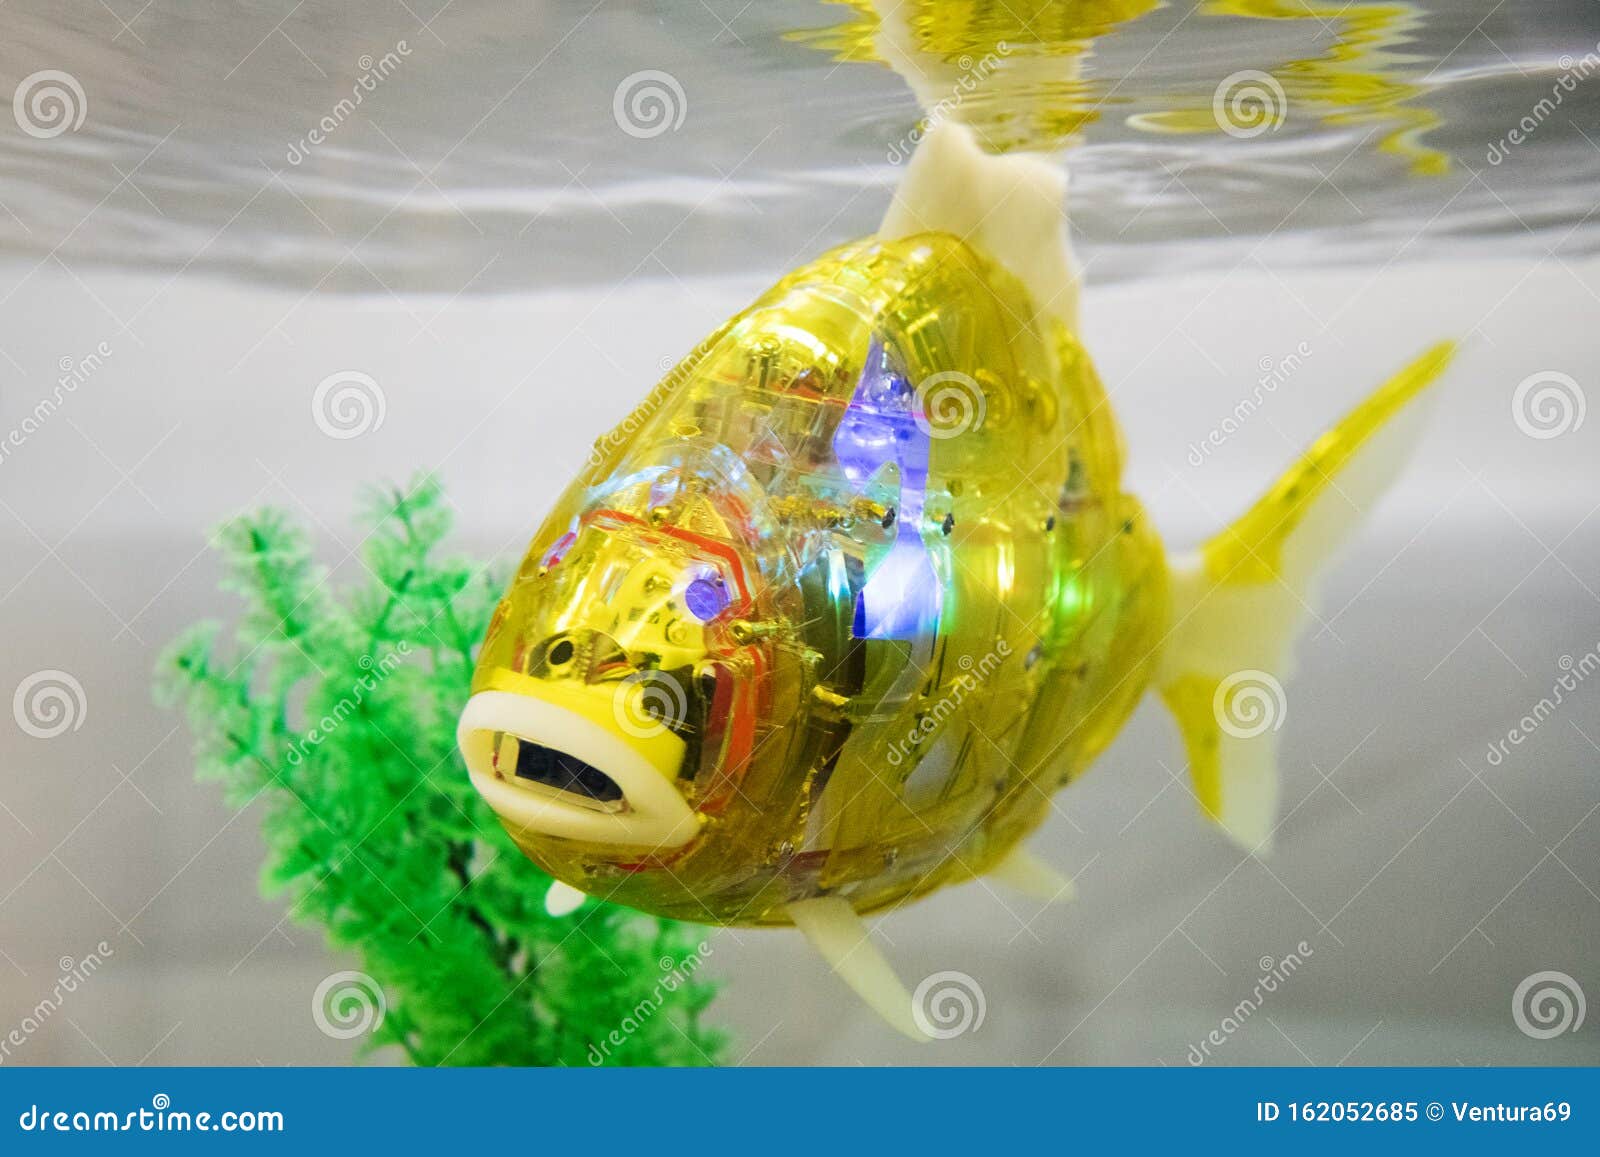 robot fish for aquarium